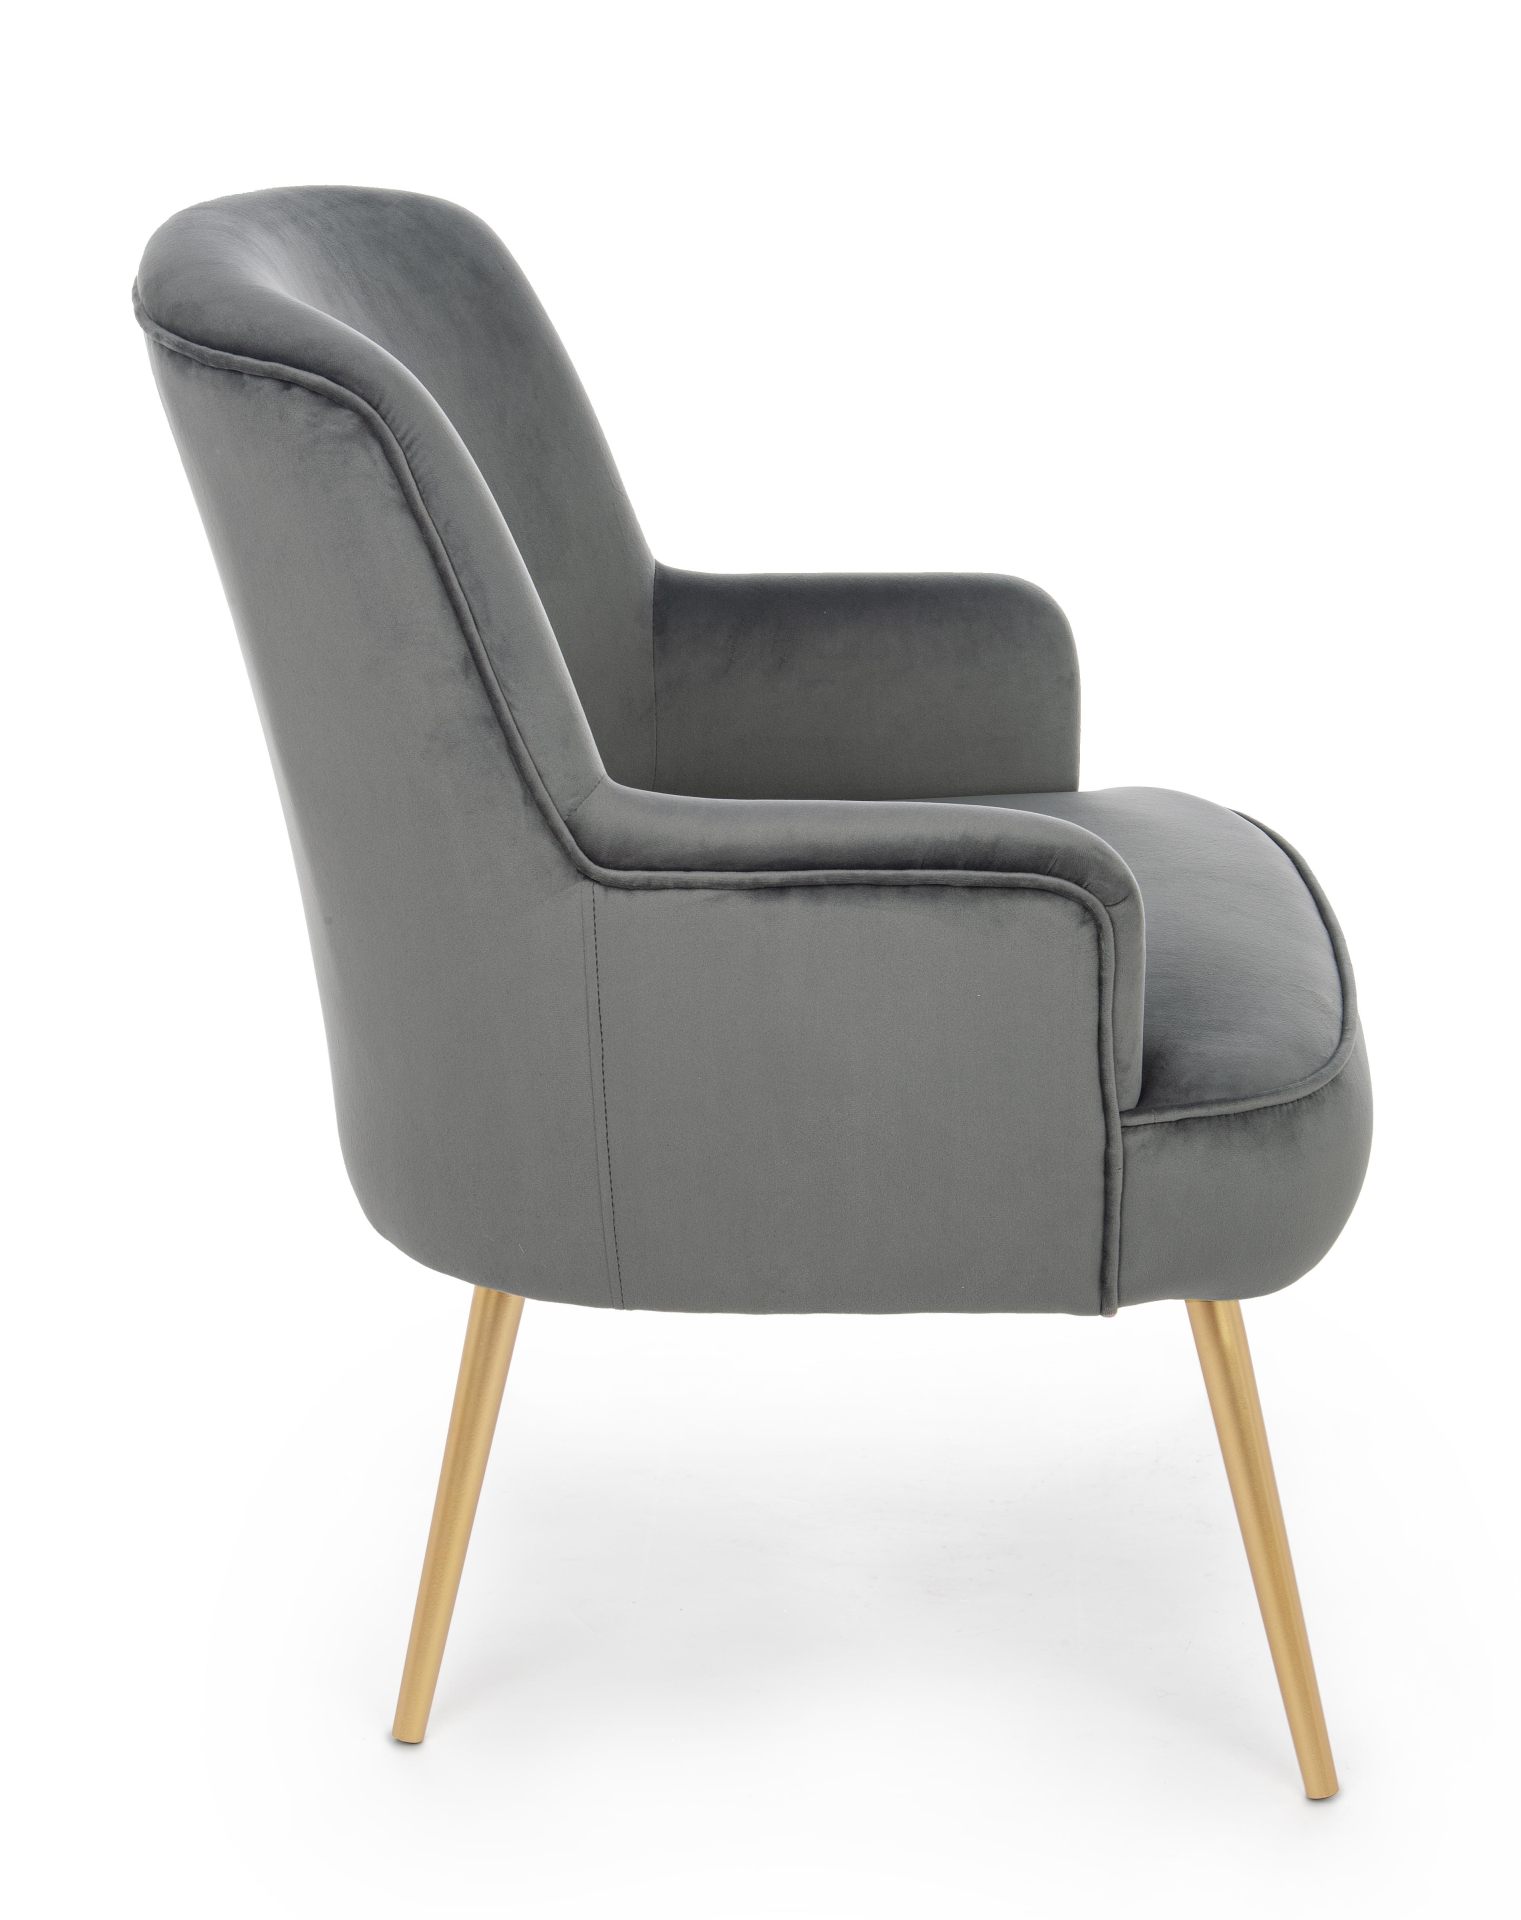 Der Sessel Clelia überzeugt mit seinem modernen Design. Gefertigt wurde er aus Stoff in Samt-Optik, welcher einen grauen Farbton besitzt. Das Gestell ist aus Metall und hat eine goldene Farbe. Der Sessel besitzt eine Sitzhöhe von 43 cm. Die Breite beträgt